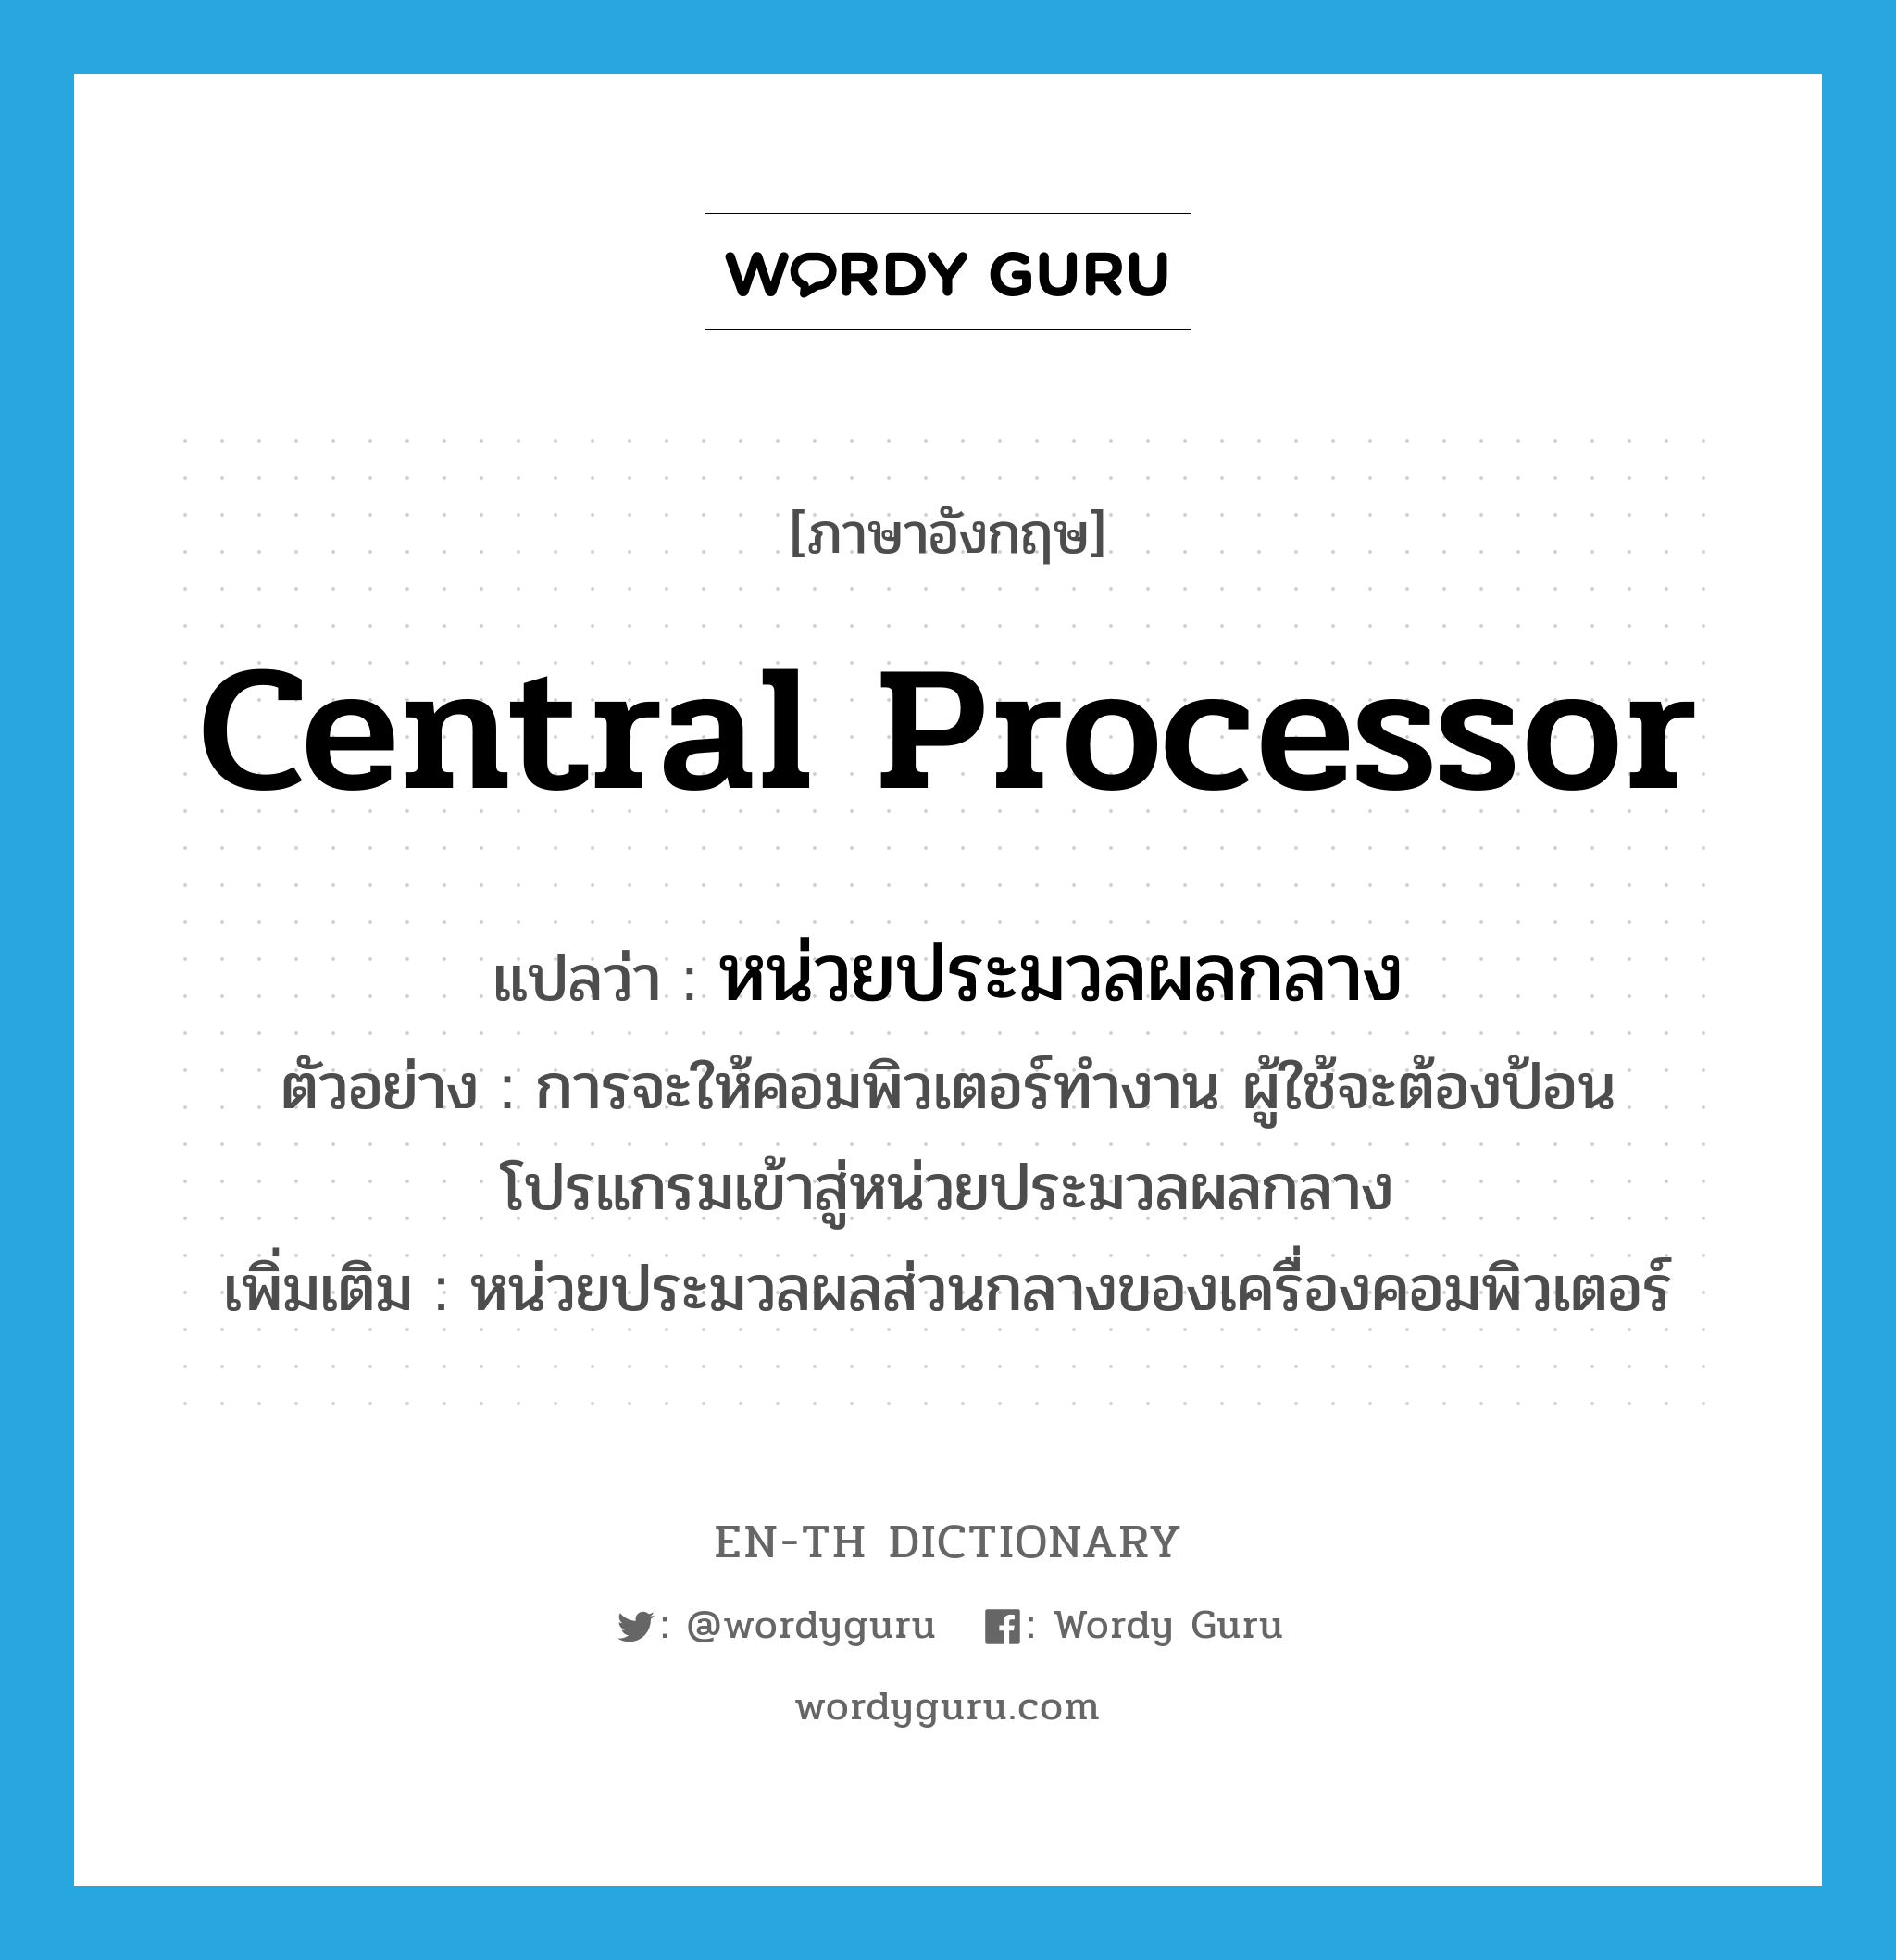 central processor แปลว่า?, คำศัพท์ภาษาอังกฤษ central processor แปลว่า หน่วยประมวลผลกลาง ประเภท N ตัวอย่าง การจะให้คอมพิวเตอร์ทำงาน ผู้ใช้จะต้องป้อนโปรแกรมเข้าสู่หน่วยประมวลผลกลาง เพิ่มเติม หน่วยประมวลผลส่วนกลางของเครื่องคอมพิวเตอร์ หมวด N